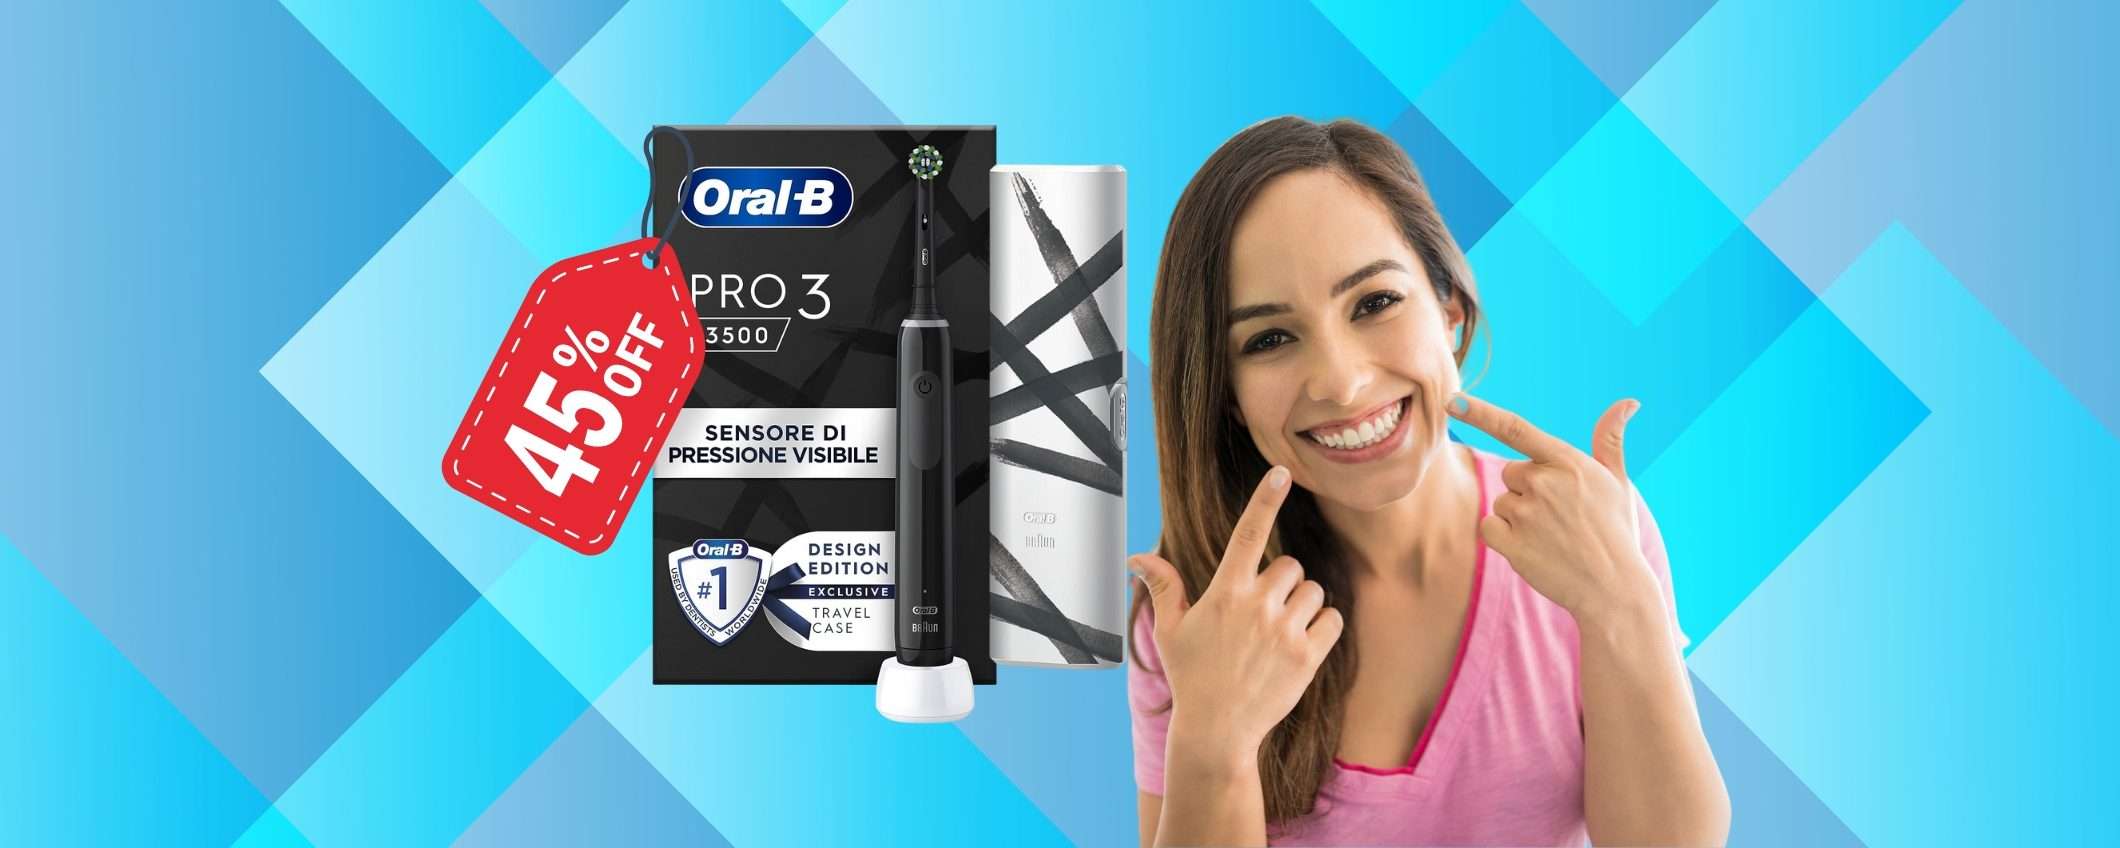 Oral-B Pro 3 Limited Edition a PREZZO REGALO, solo 39€